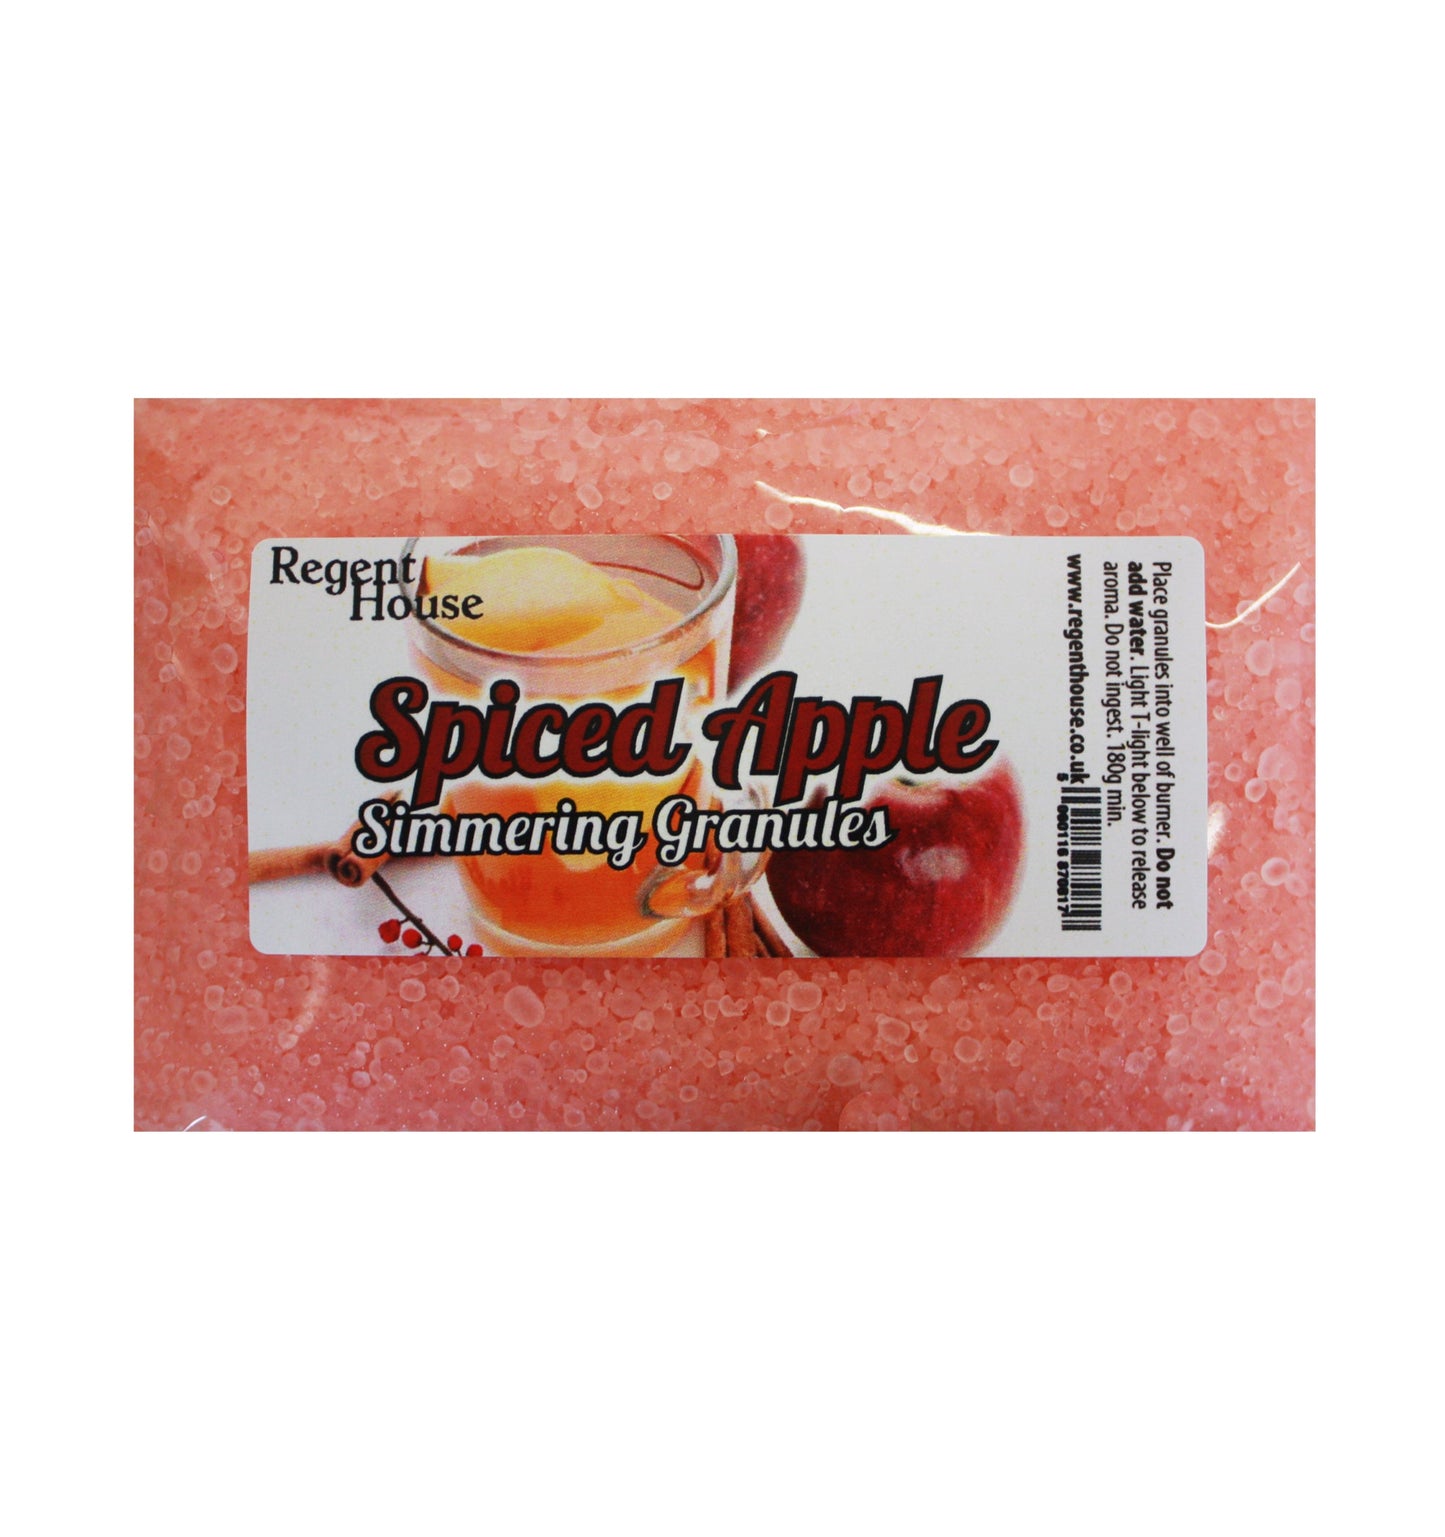 Spiced Apple Simmering Granules